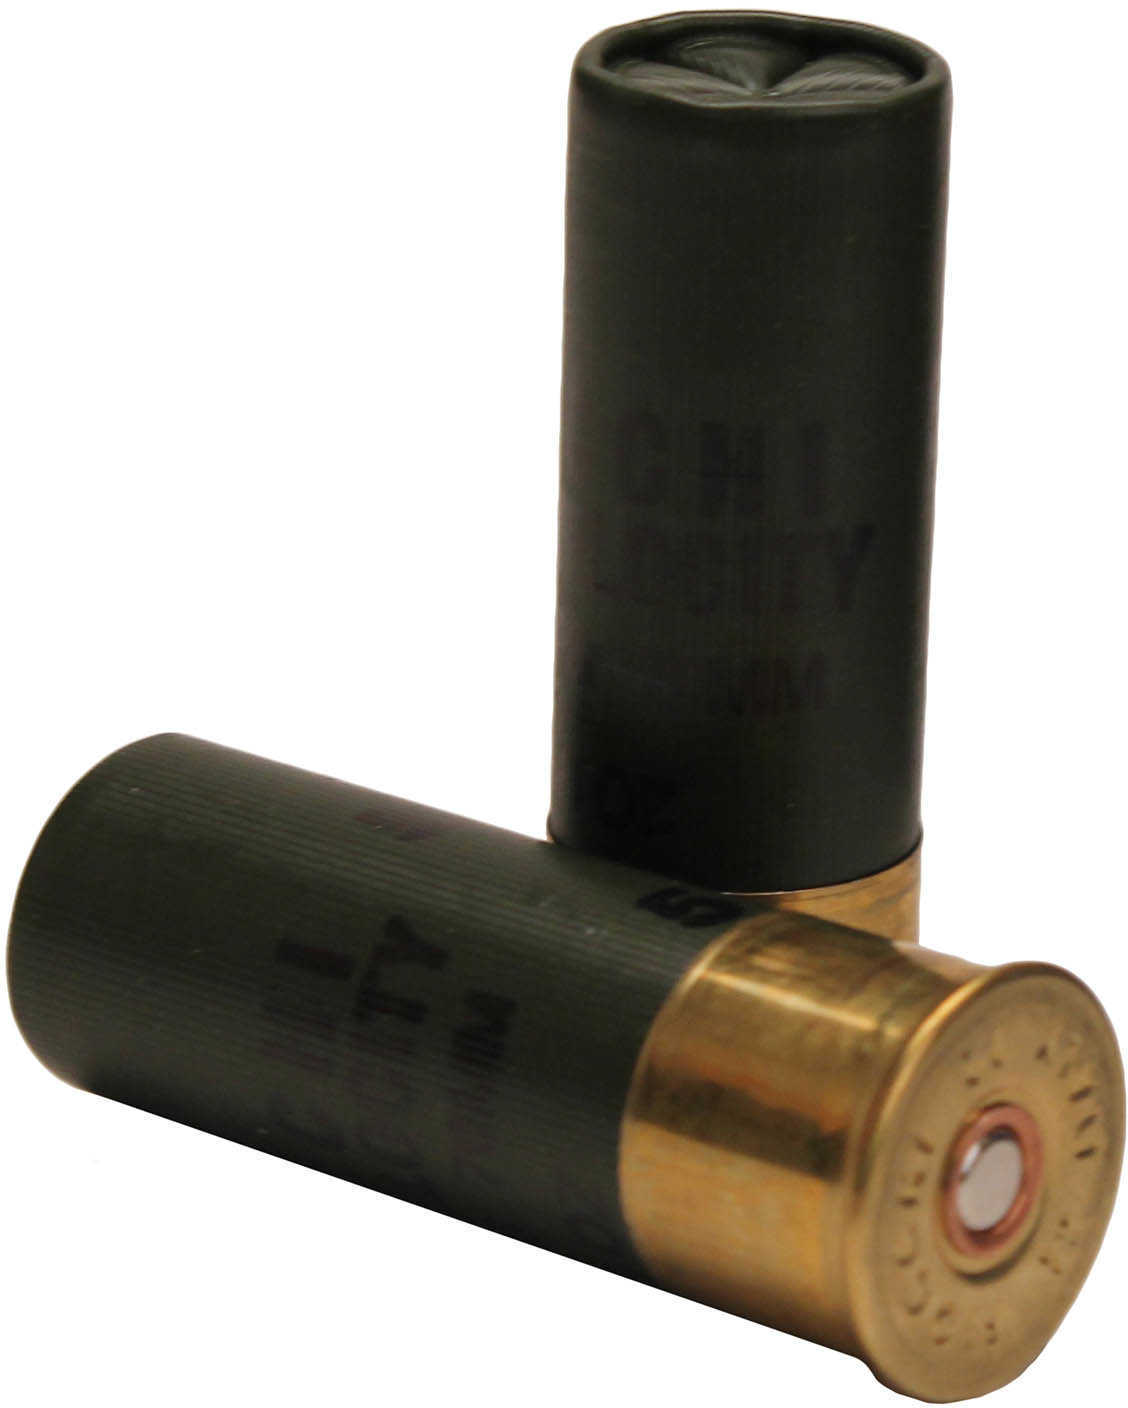 12 Gauge 25 Rounds Ammunition Fiocchi Ammo 2 3/4" 1 1/4 oz Lead #5